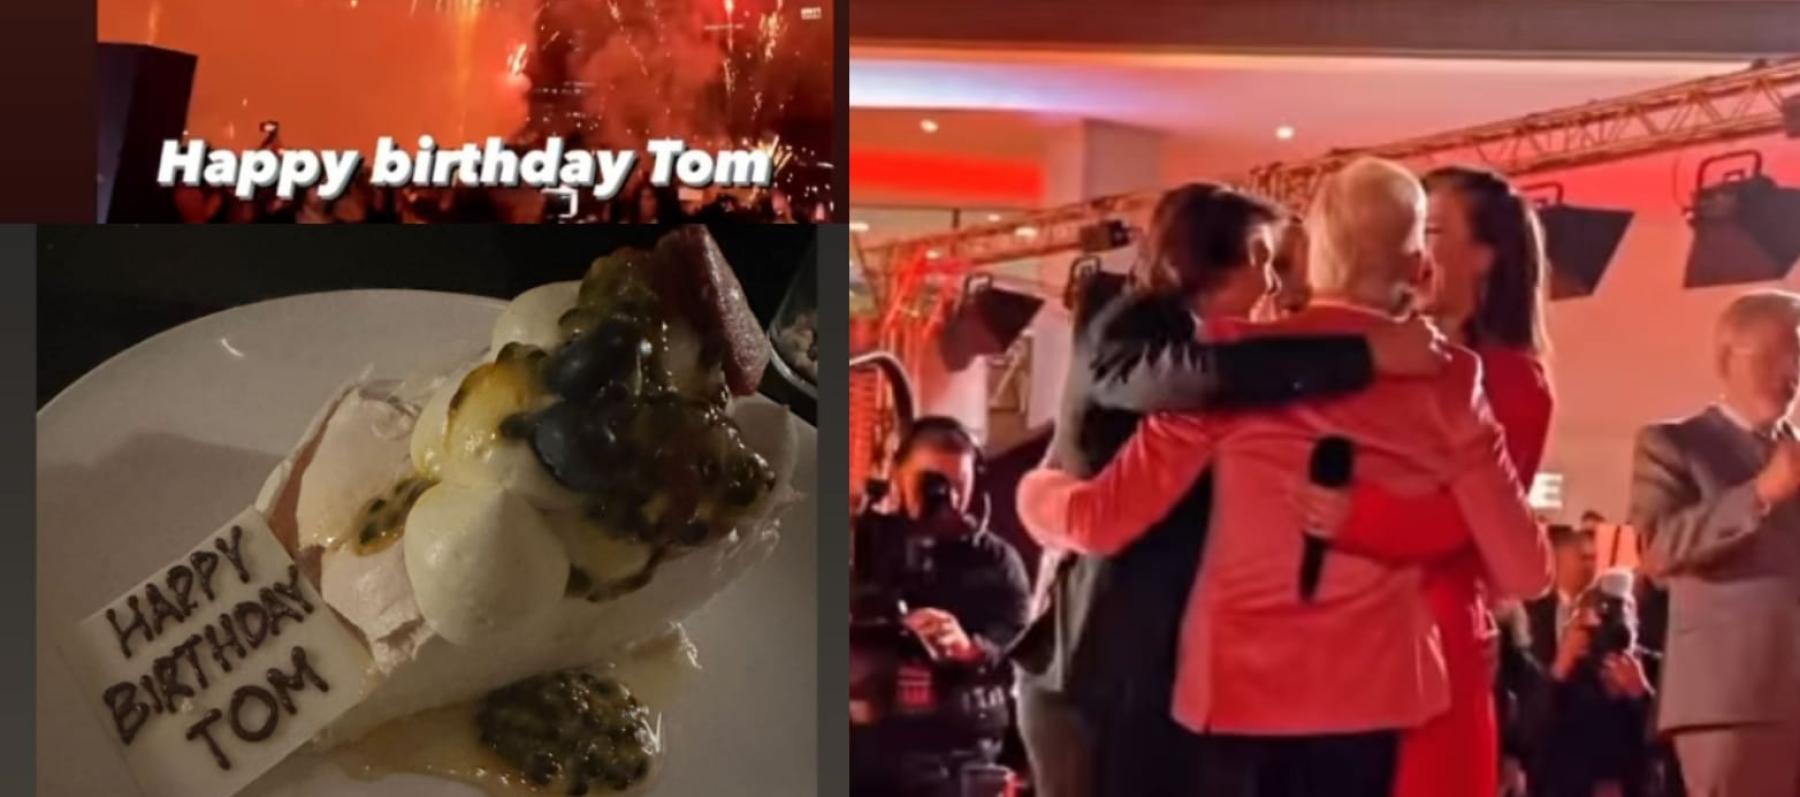 توم كروز يحتفل بعيد ميلاده في سيدني- الصور من فيديوهات شاركتها هايلي أتويل@wellhayley